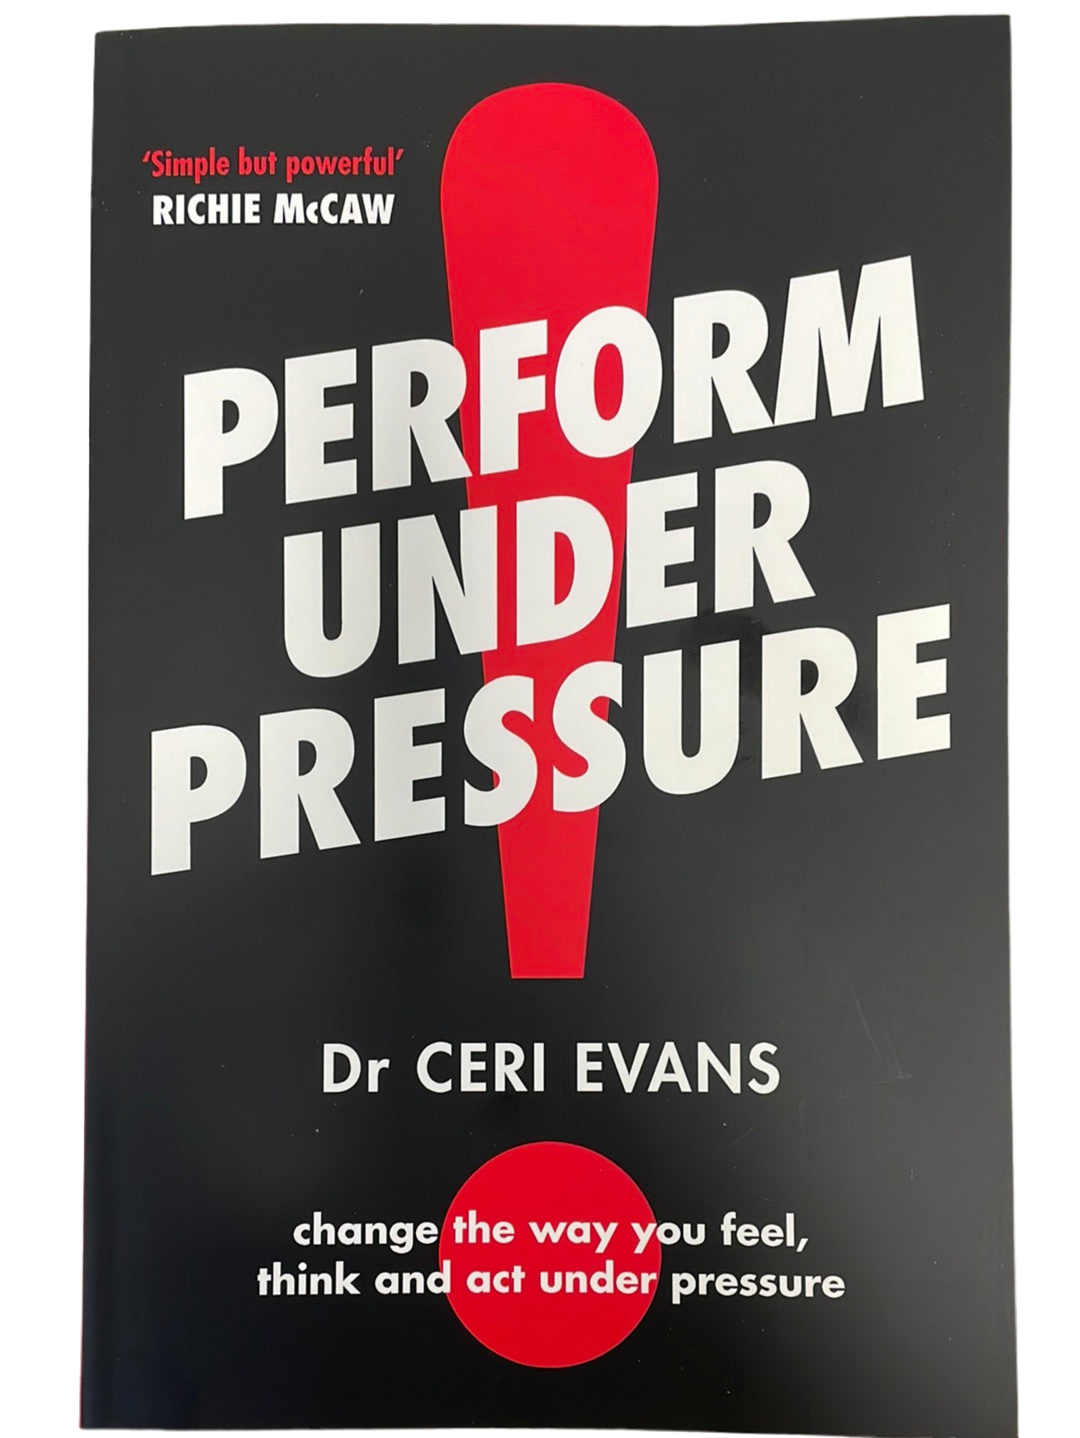 Perform Under Pressure - Dr Ceri Evans